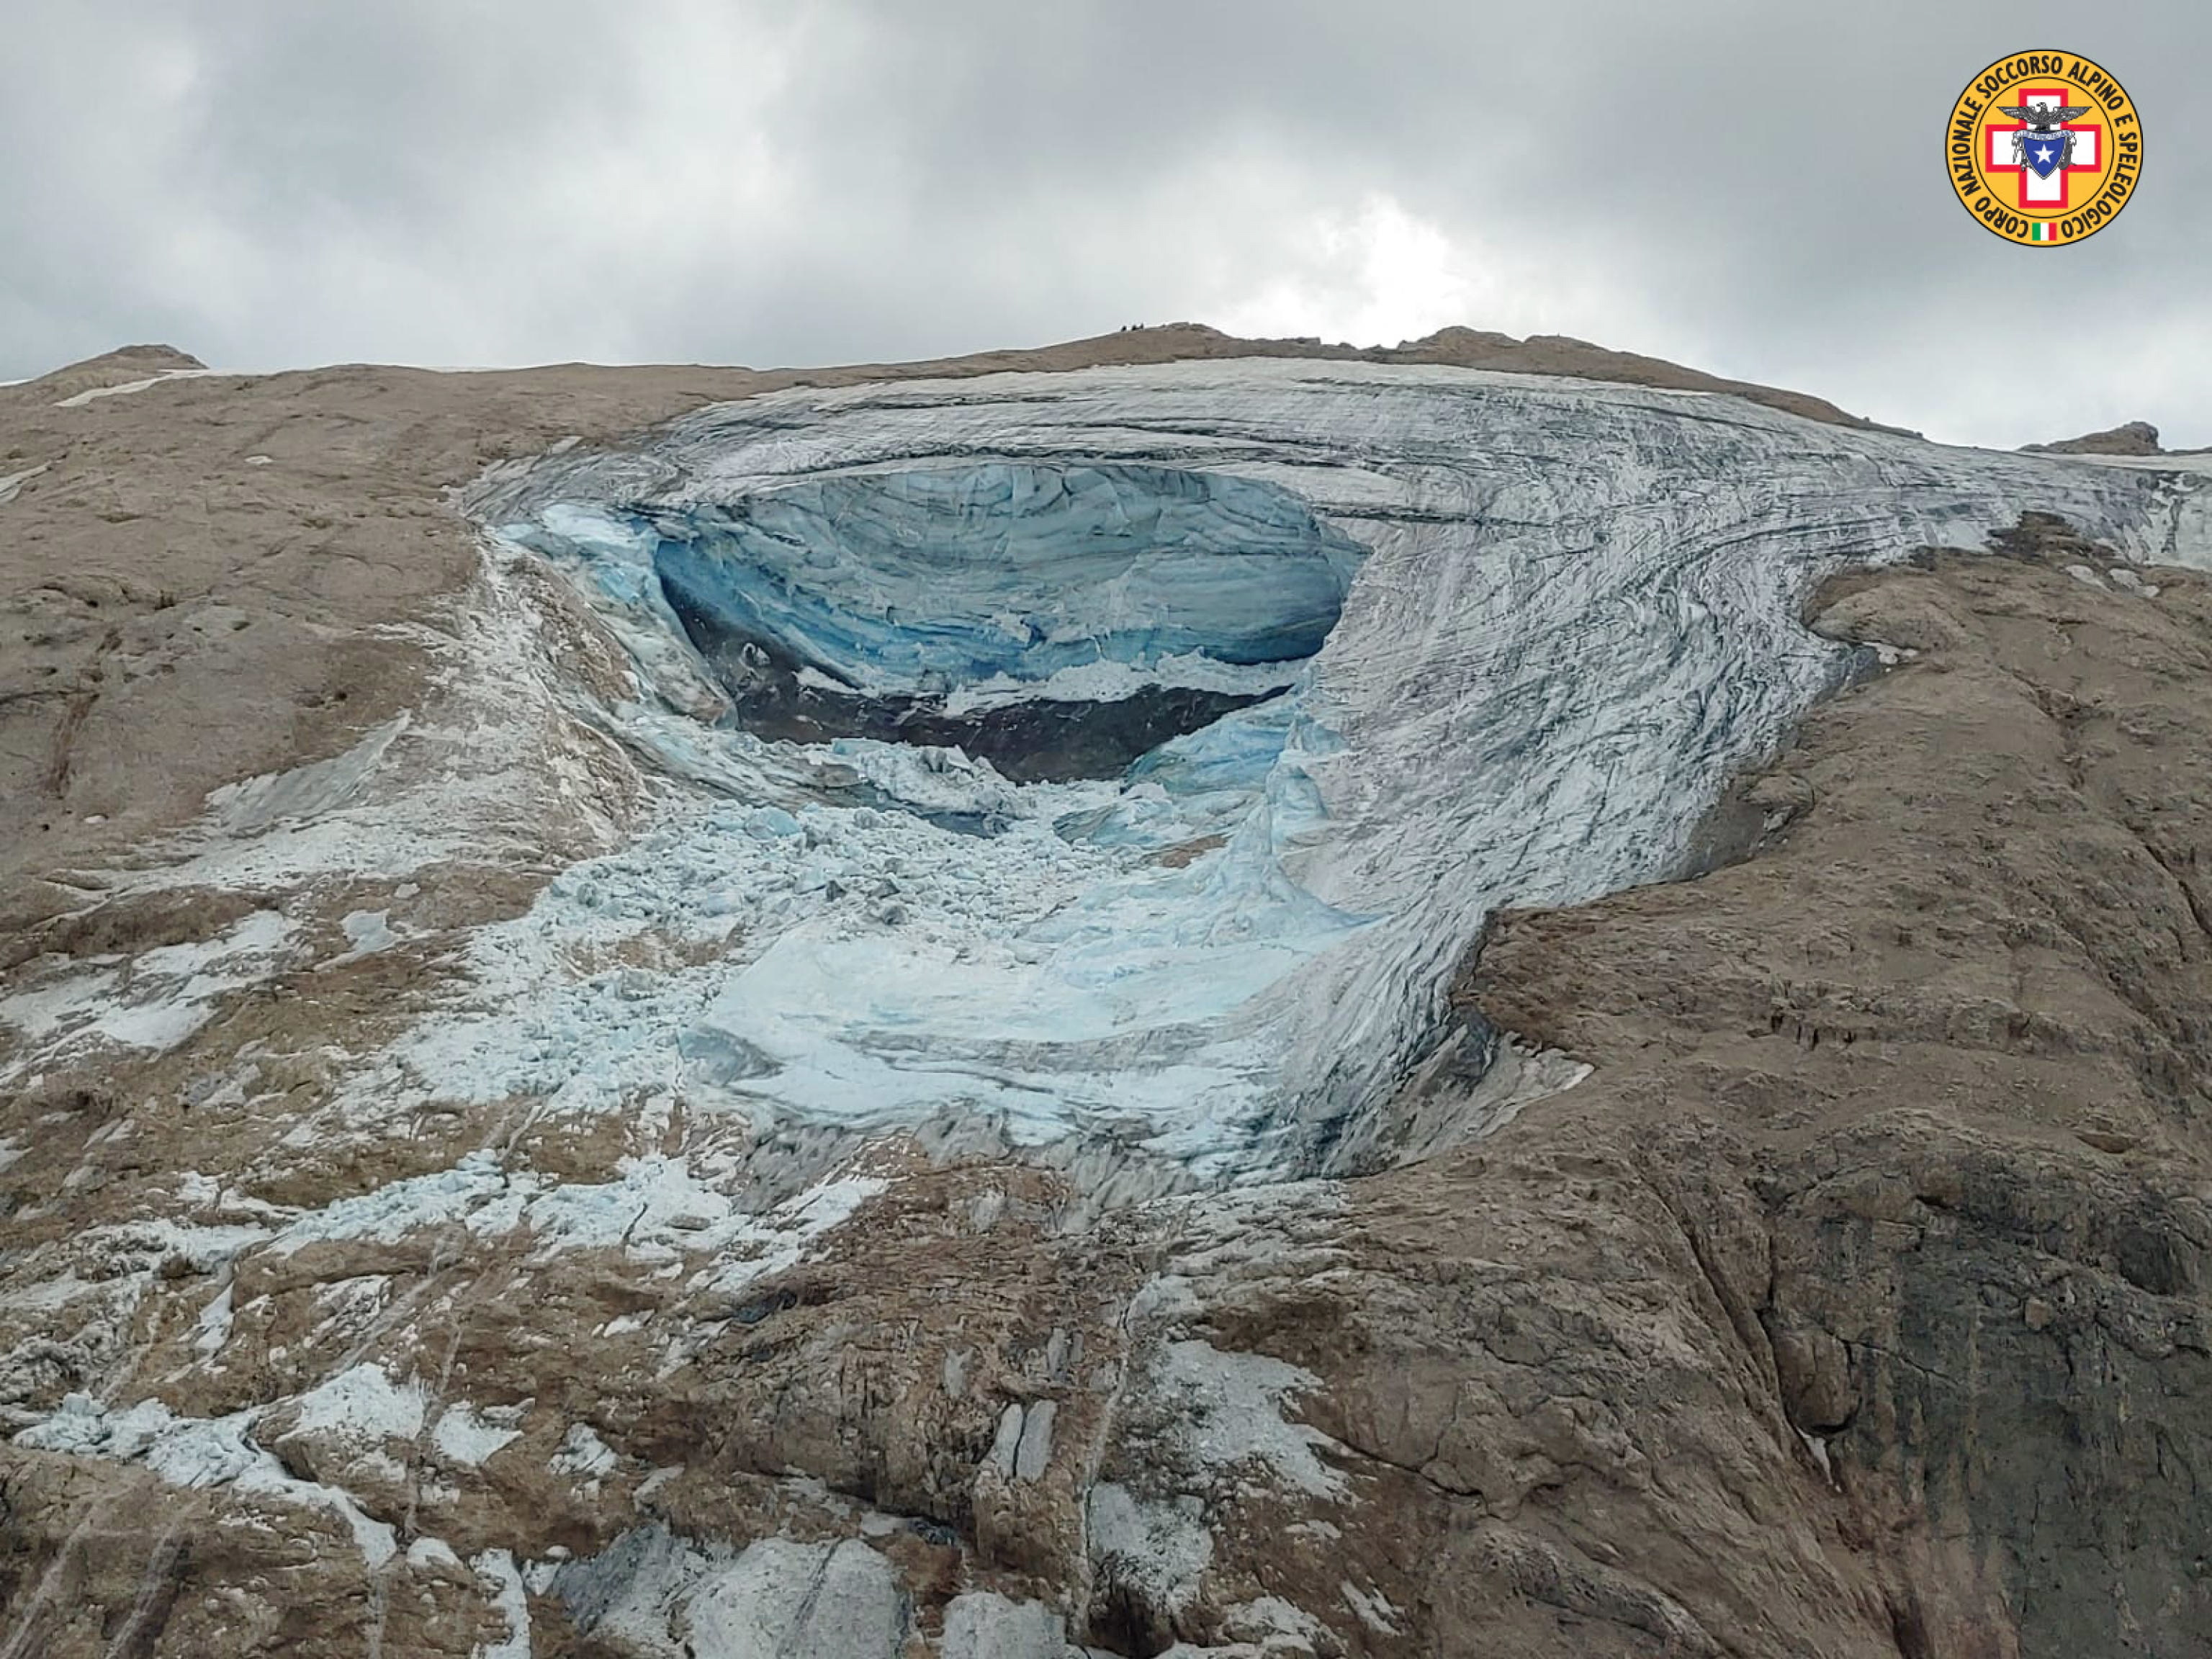 Buscan a al menos 15 personas desaparecidas tras el desprendimiento del glaciar de la Marmolada: «Ha sido una carnicería»